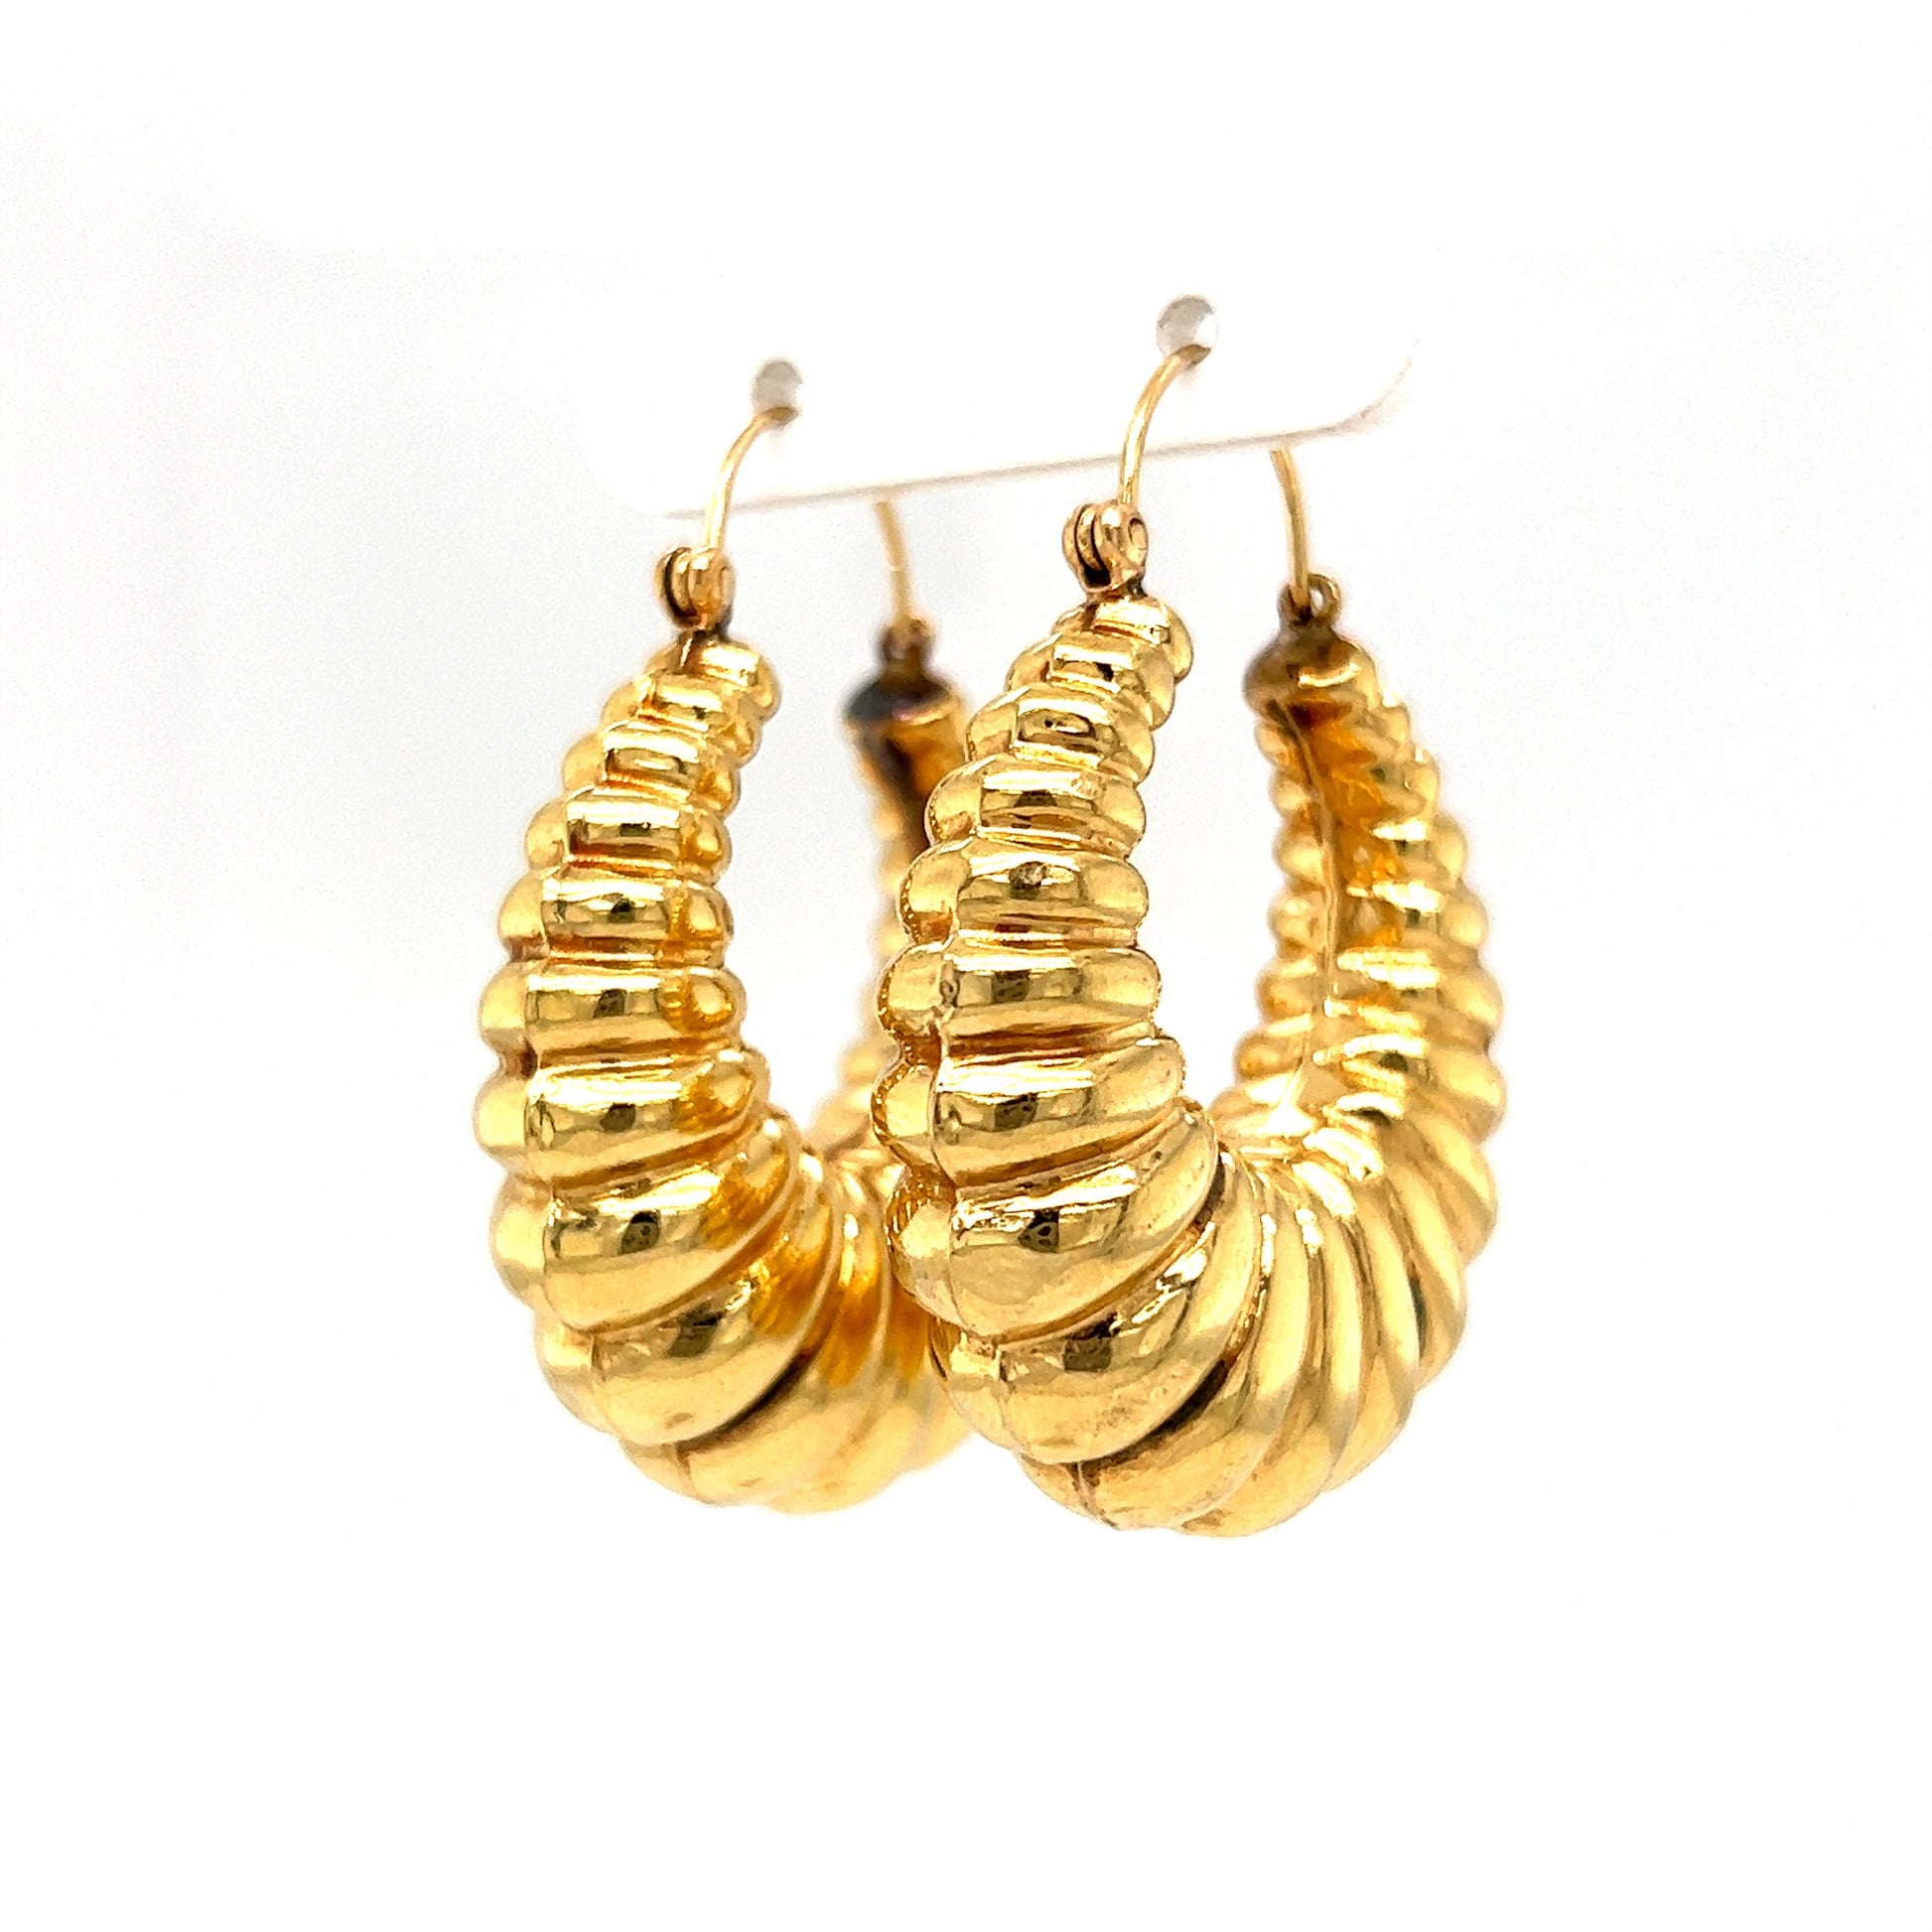 Lightweight Scalloped Hoop Earrings in 14k Yellow Gold